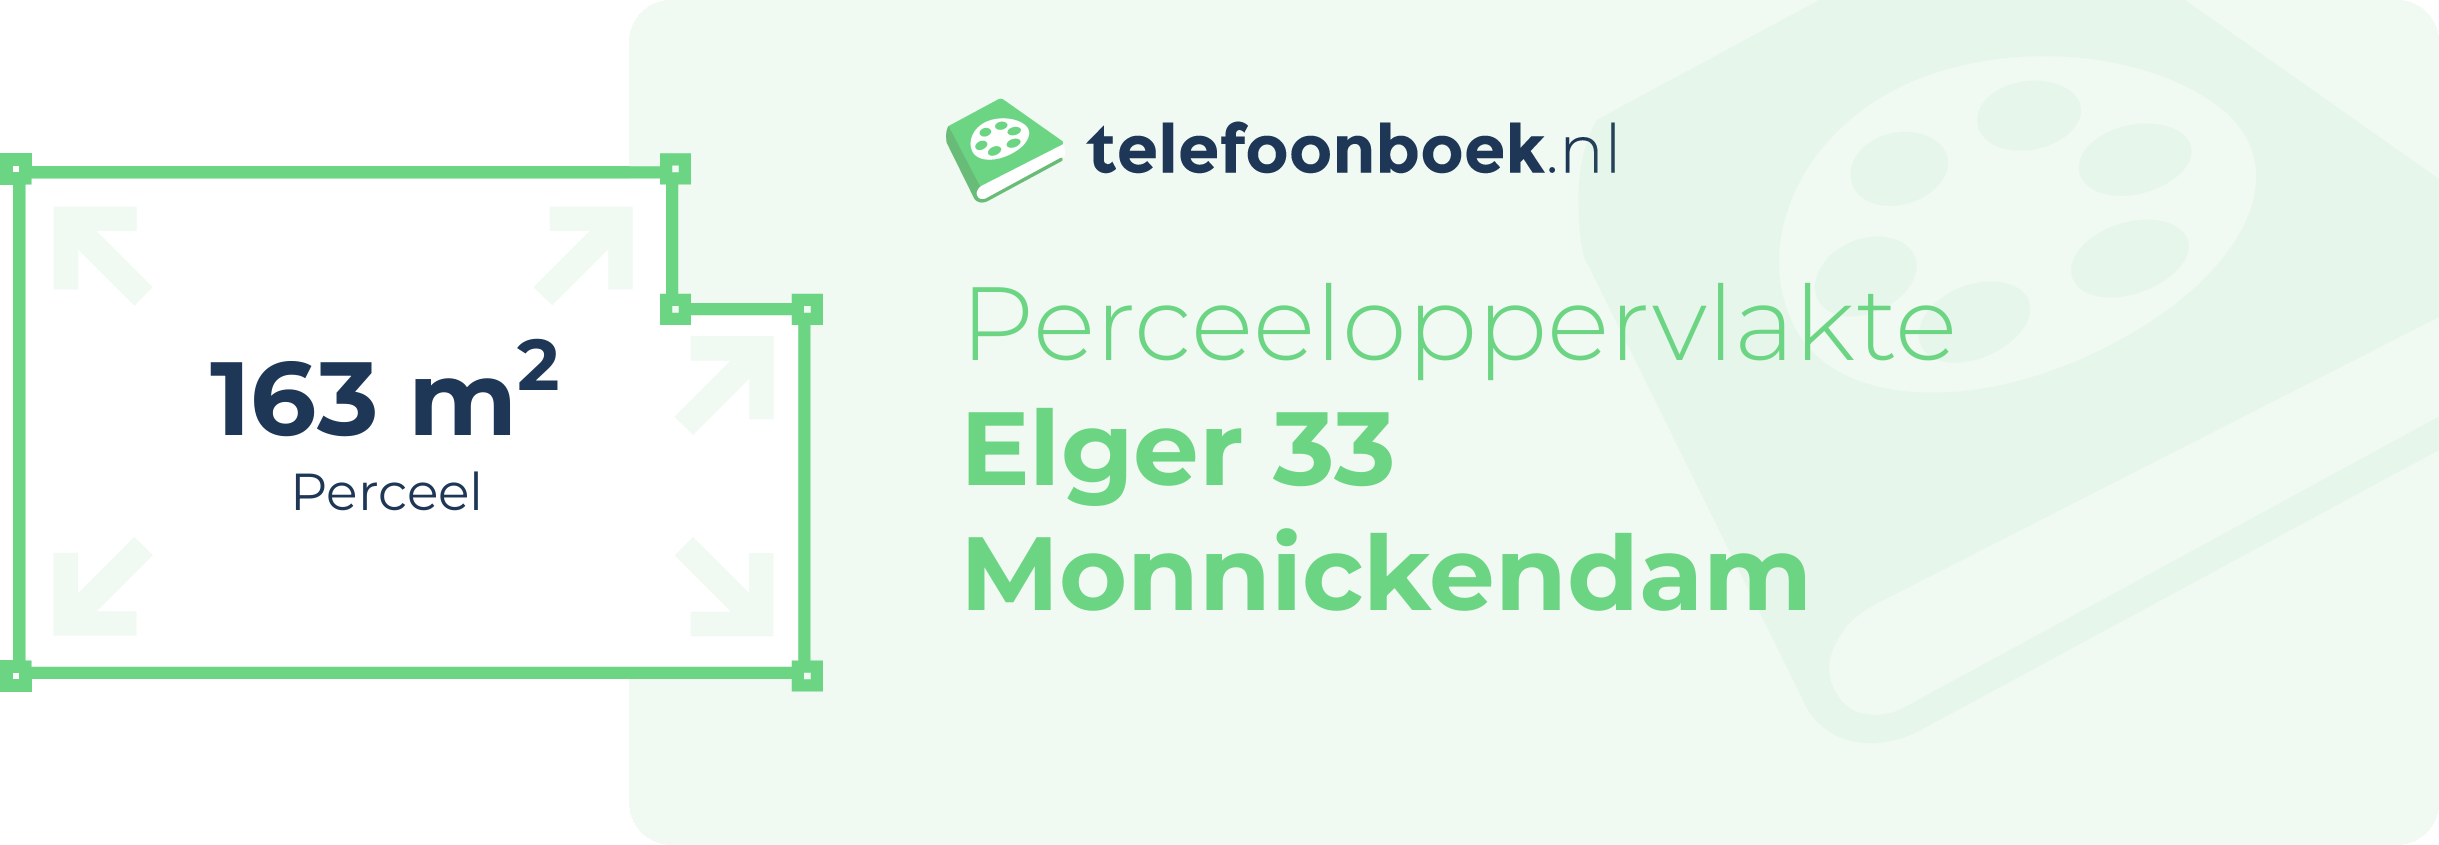 Perceeloppervlakte Elger 33 Monnickendam